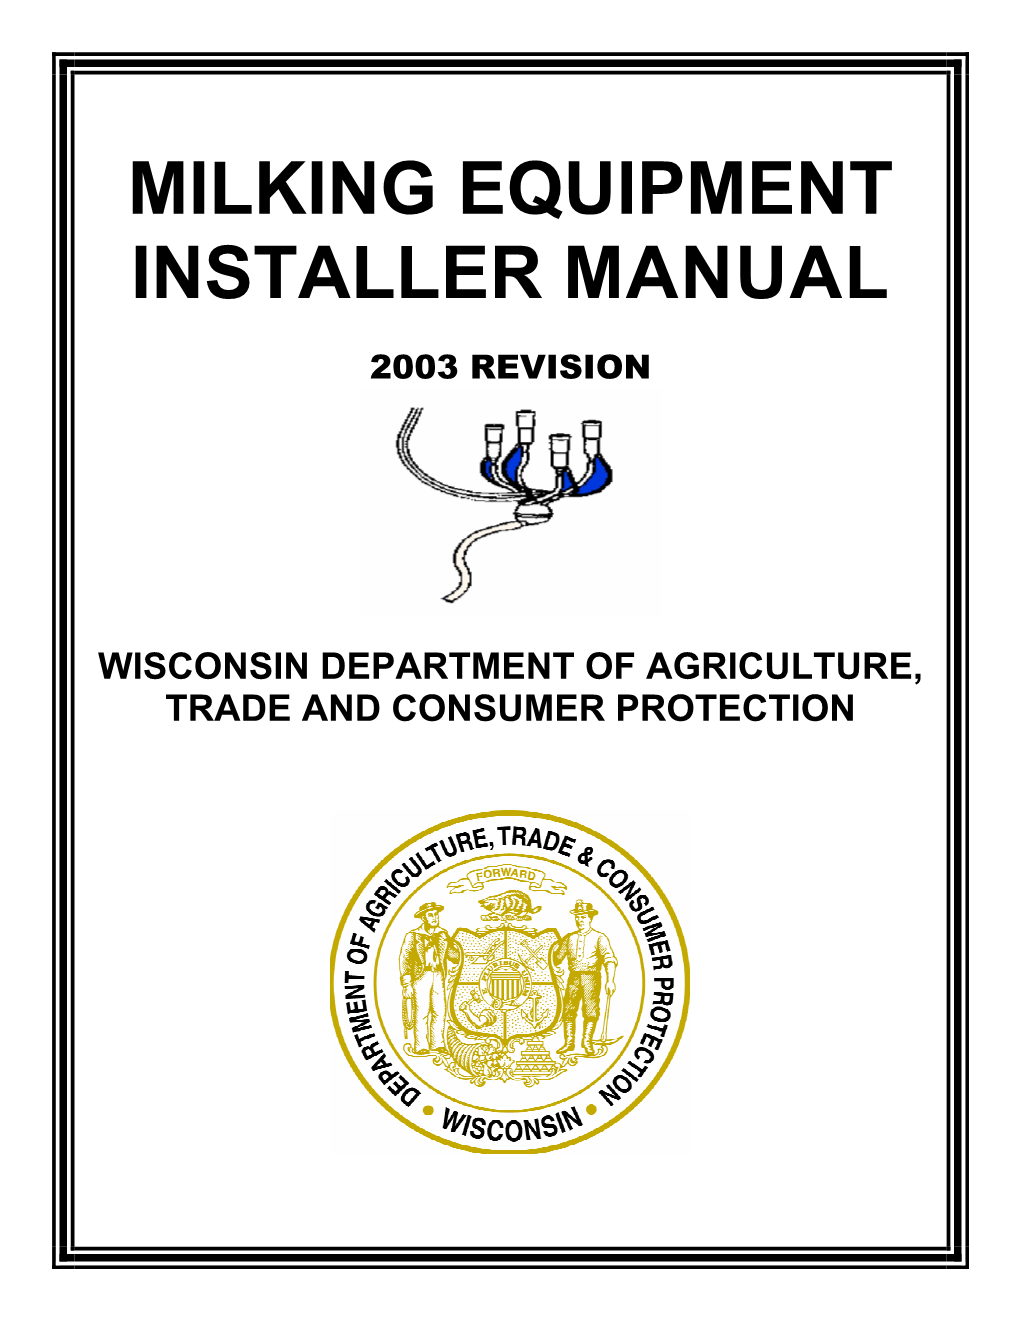 Milking Equipment Installer Manual, 2003 Revision